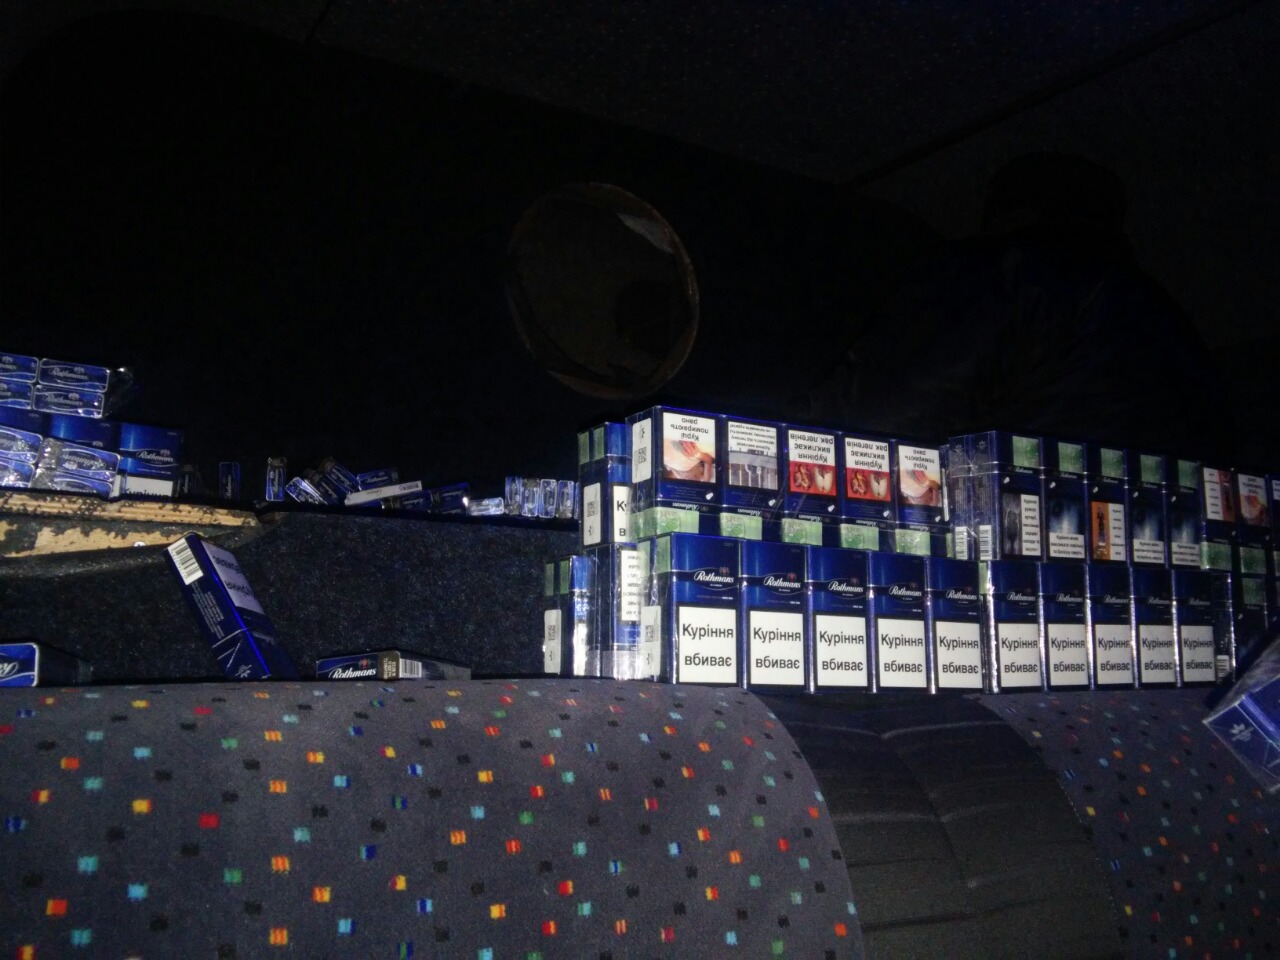 Прикордонниками Мукачівського загону спільно з співробітниками митниці під час огляду мікроавтобуса «Мерседес», який прибув на КПП «Лужанка» було виявлено 5300 пачок тютюнових виробів різних марок.